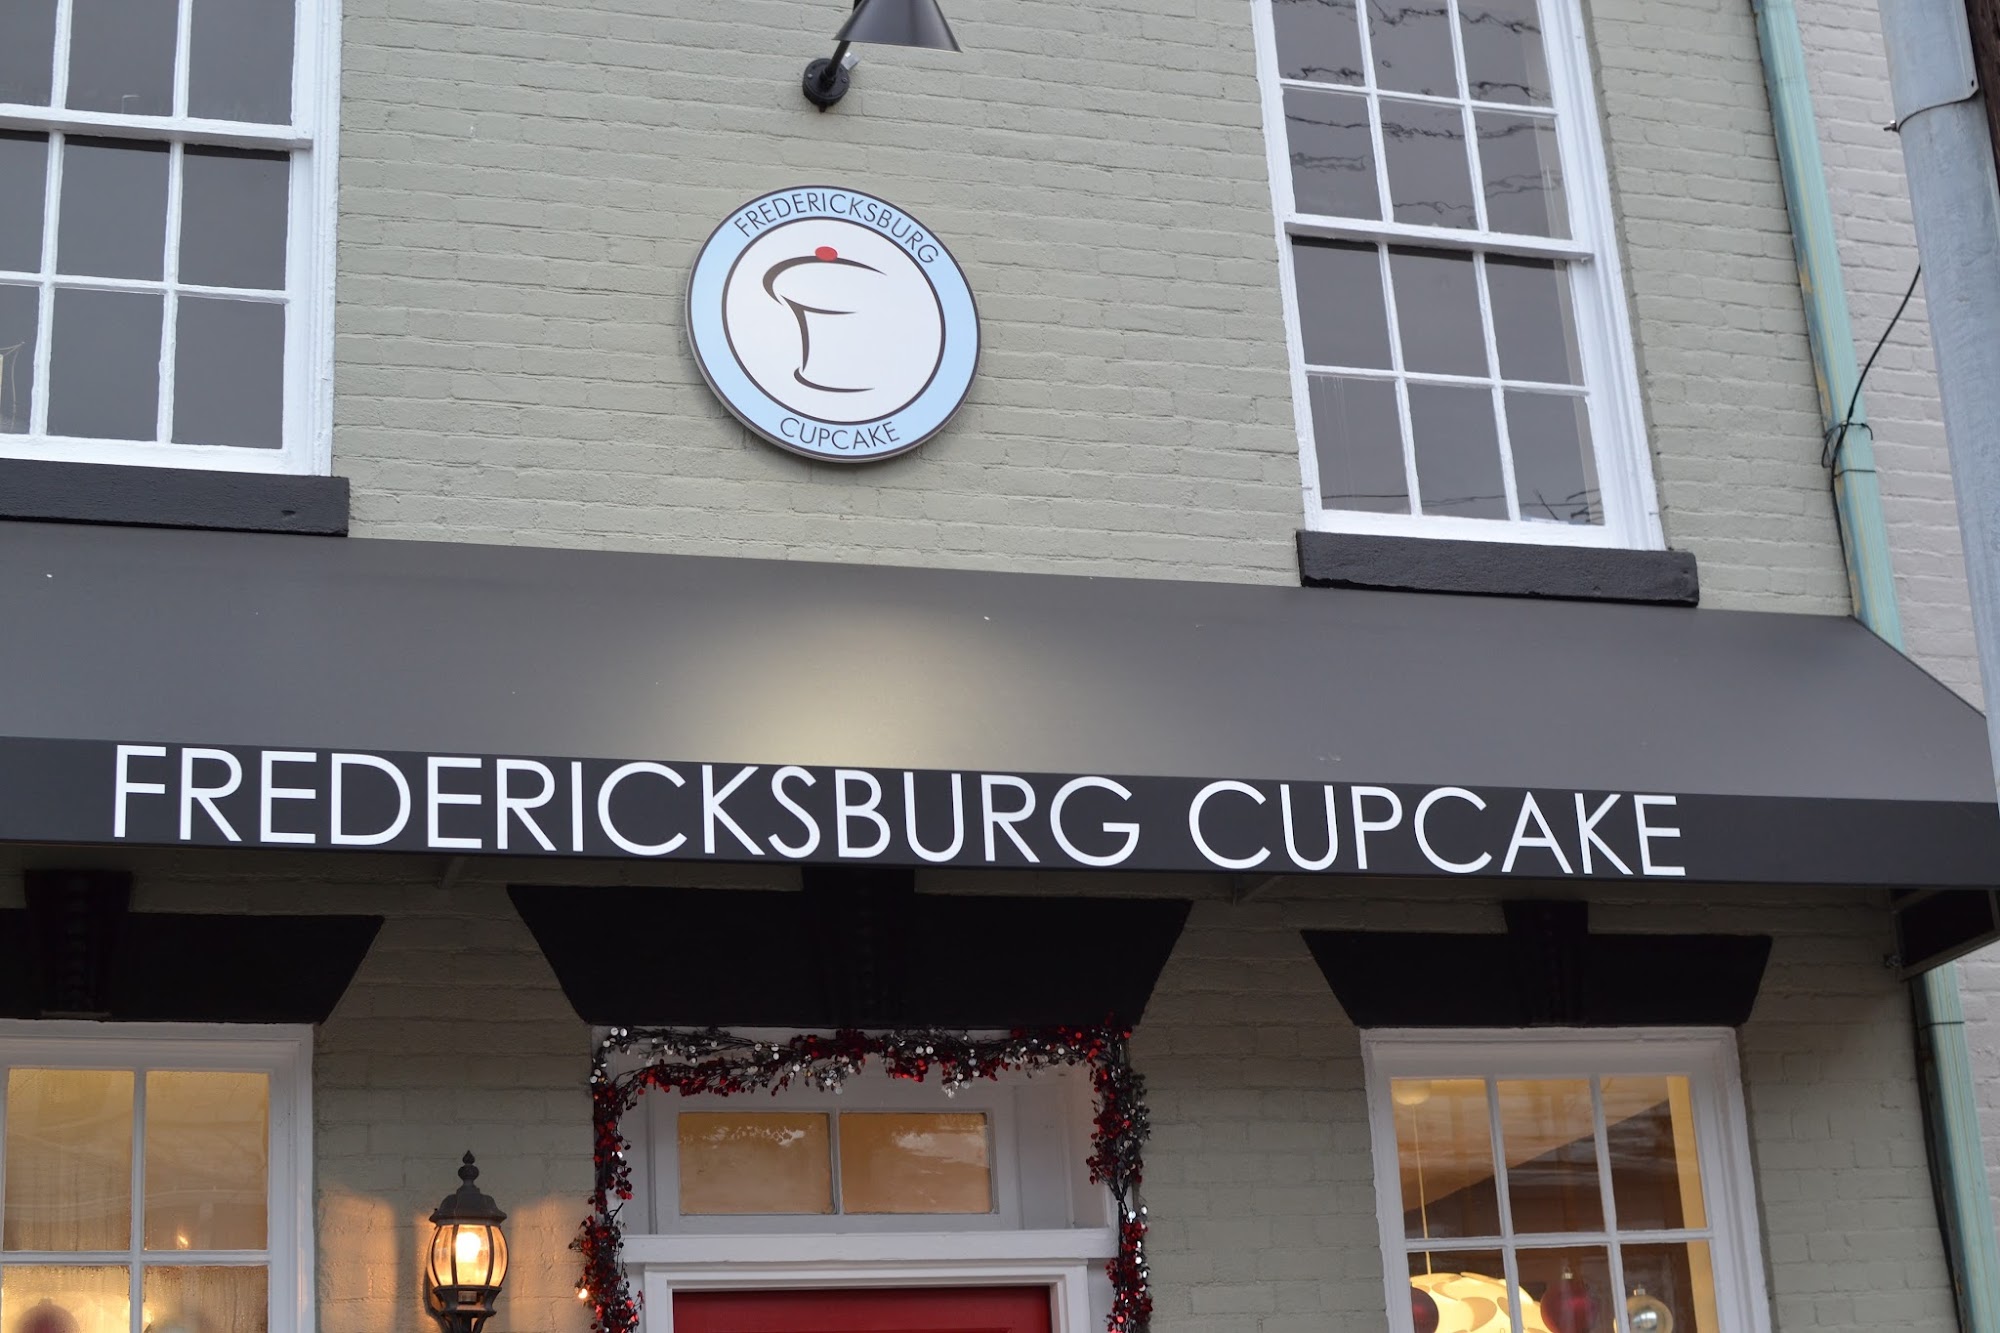 Fredericksburg Cupcake